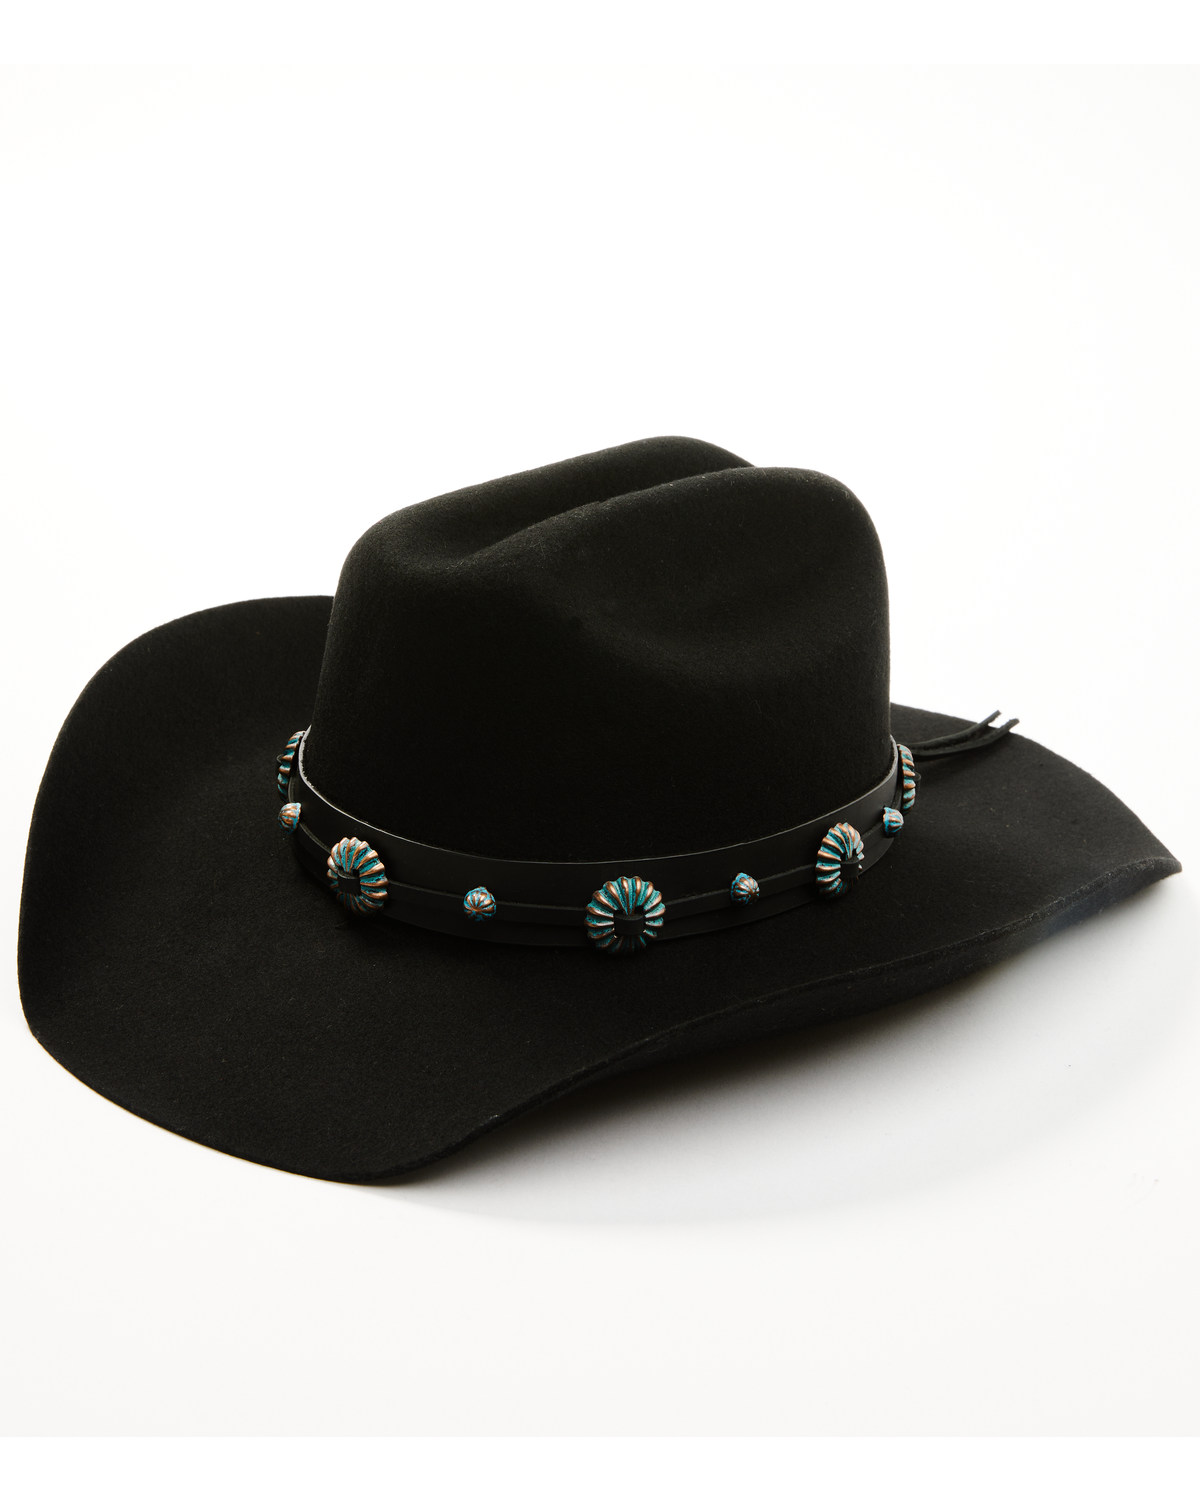 Idyllwind Women's Delgado Felt Cowboy Hat